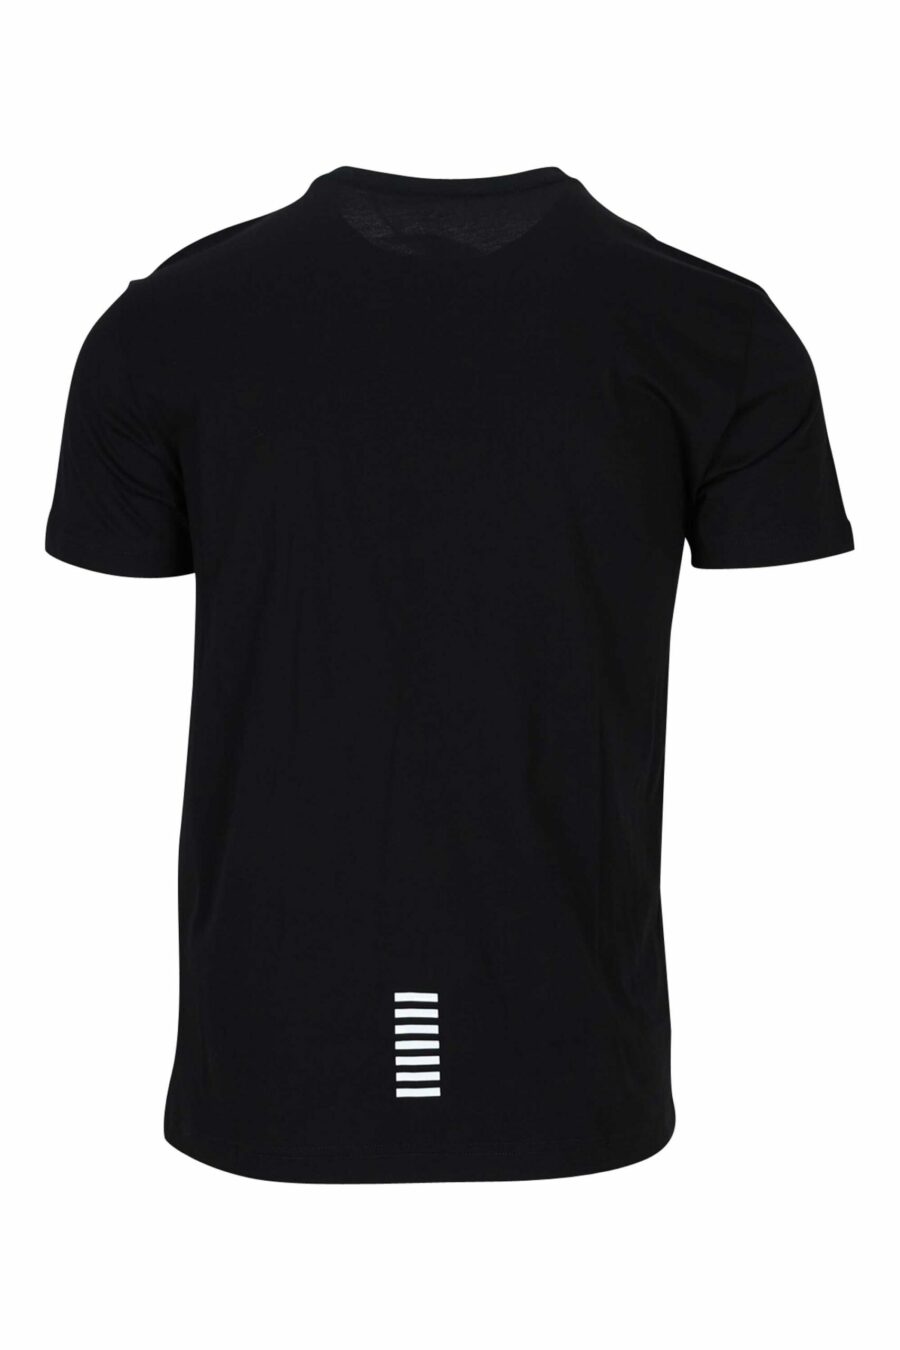 T-shirt schwarz mit weißem "lux identity" Farbverlauf minilogue - 8055187167147 1 skaliert